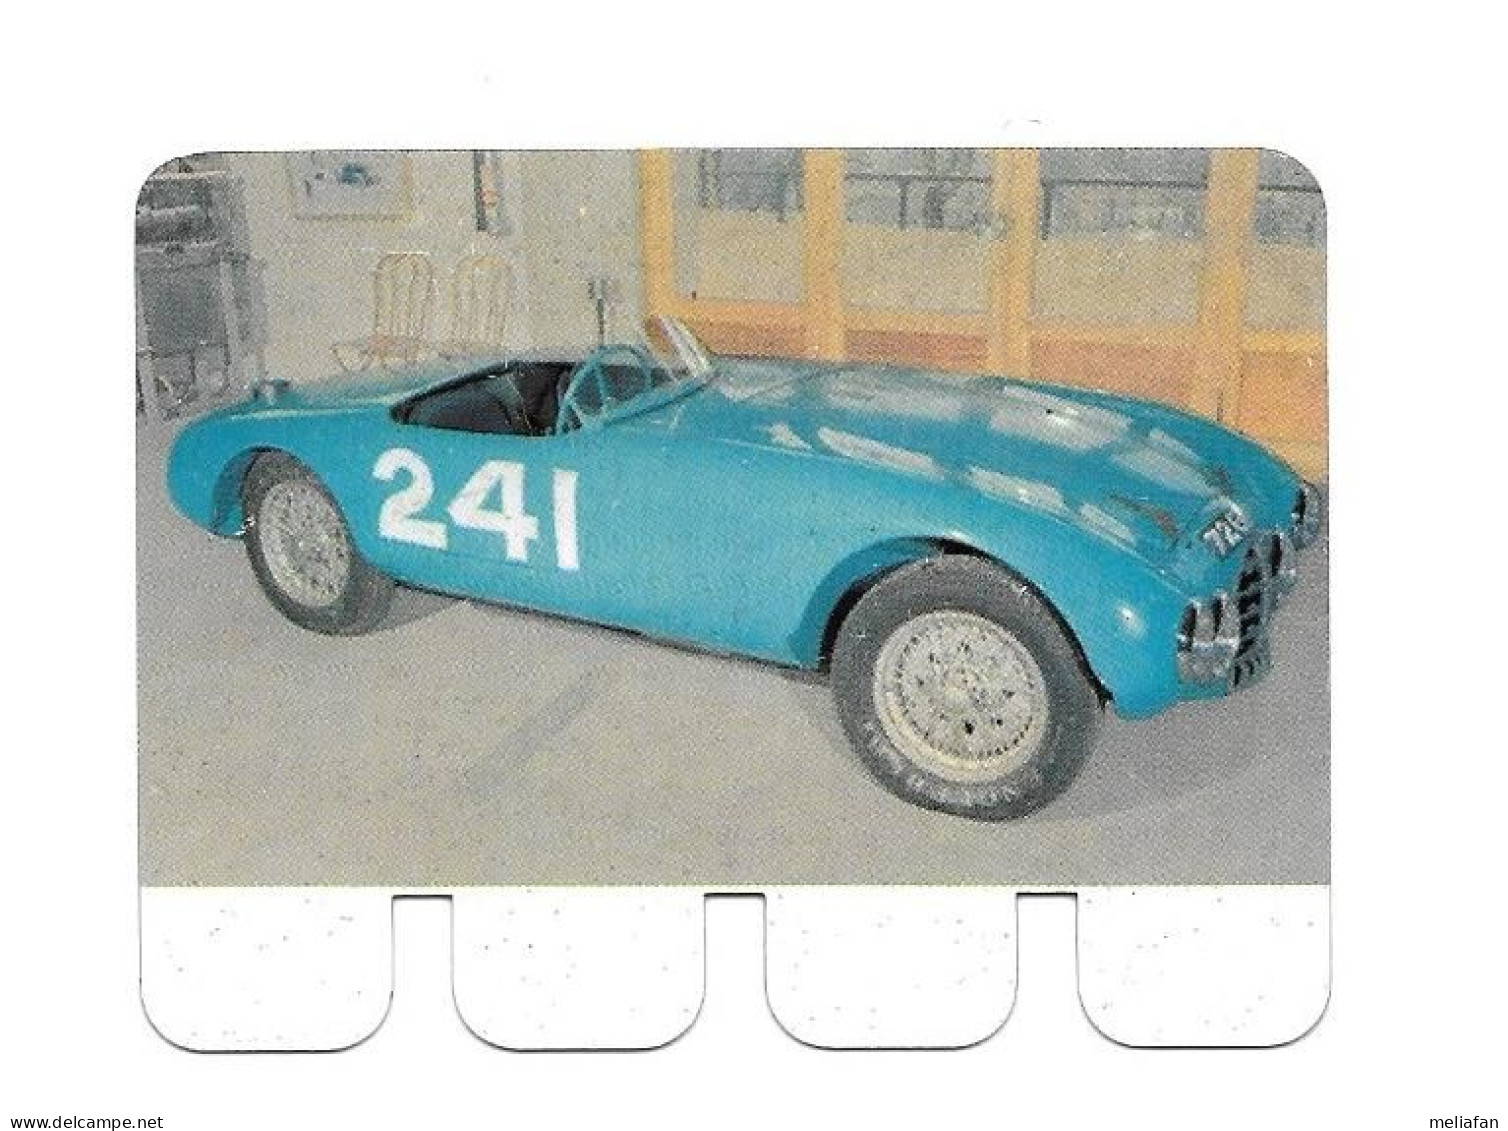 BL95 - IMAGE METALLIQUE COOP - GORDINI 1954 - Car Racing - F1